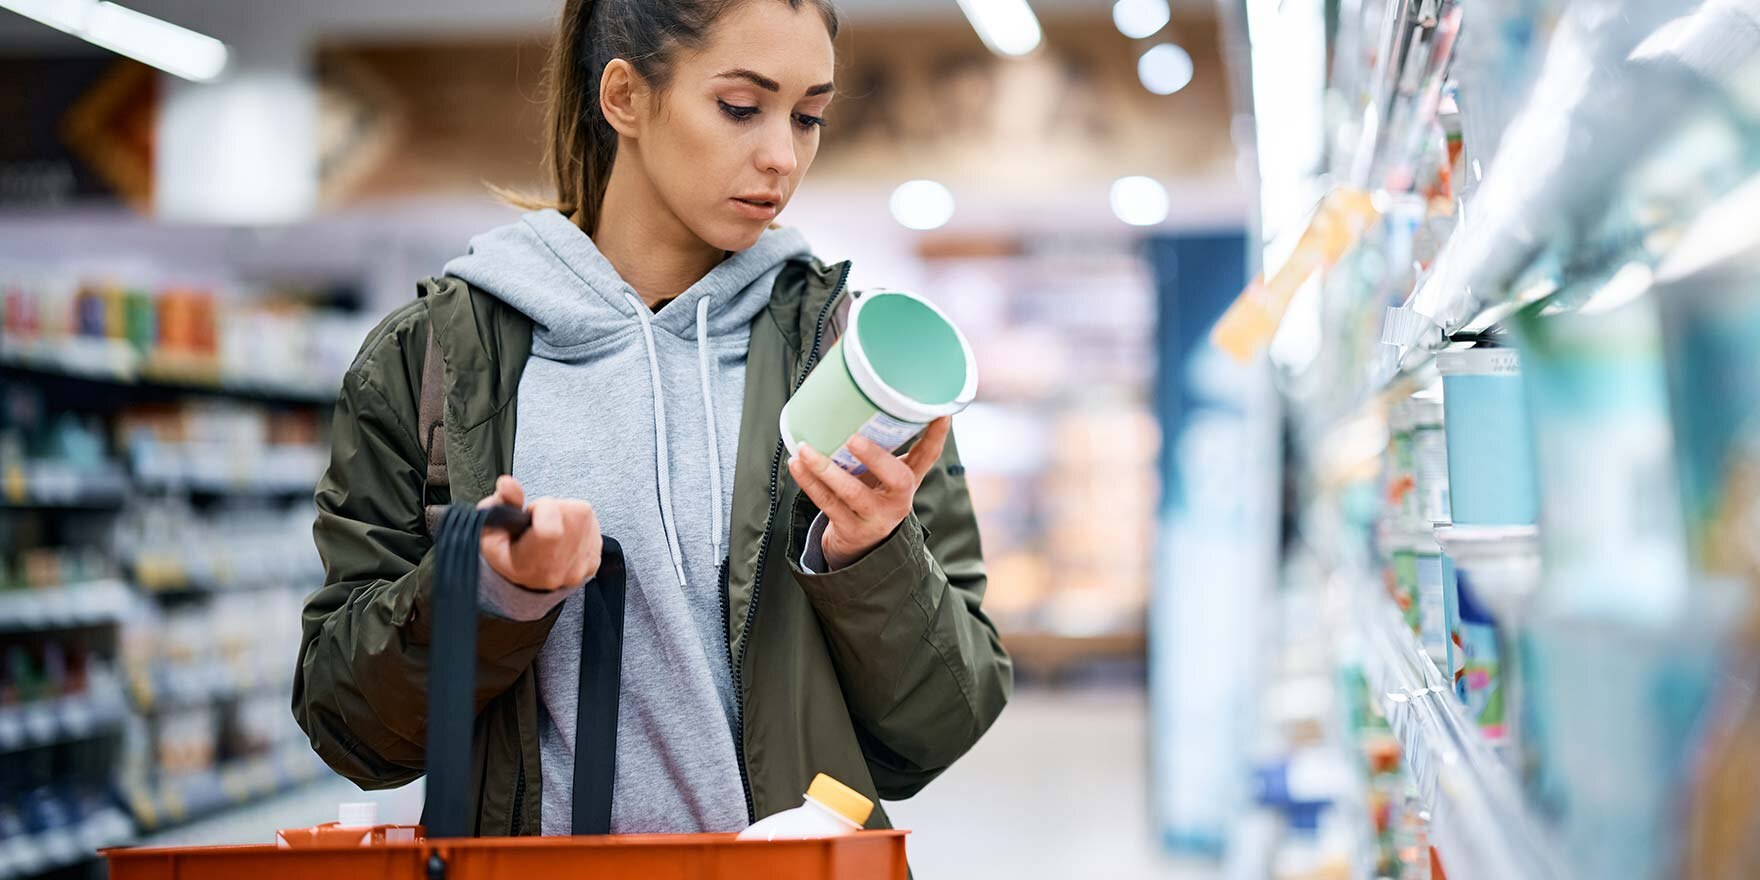 Junge Frau im Supermarkt mit Einkaufskorb, die Milchprodukt in der Hand inspiziert